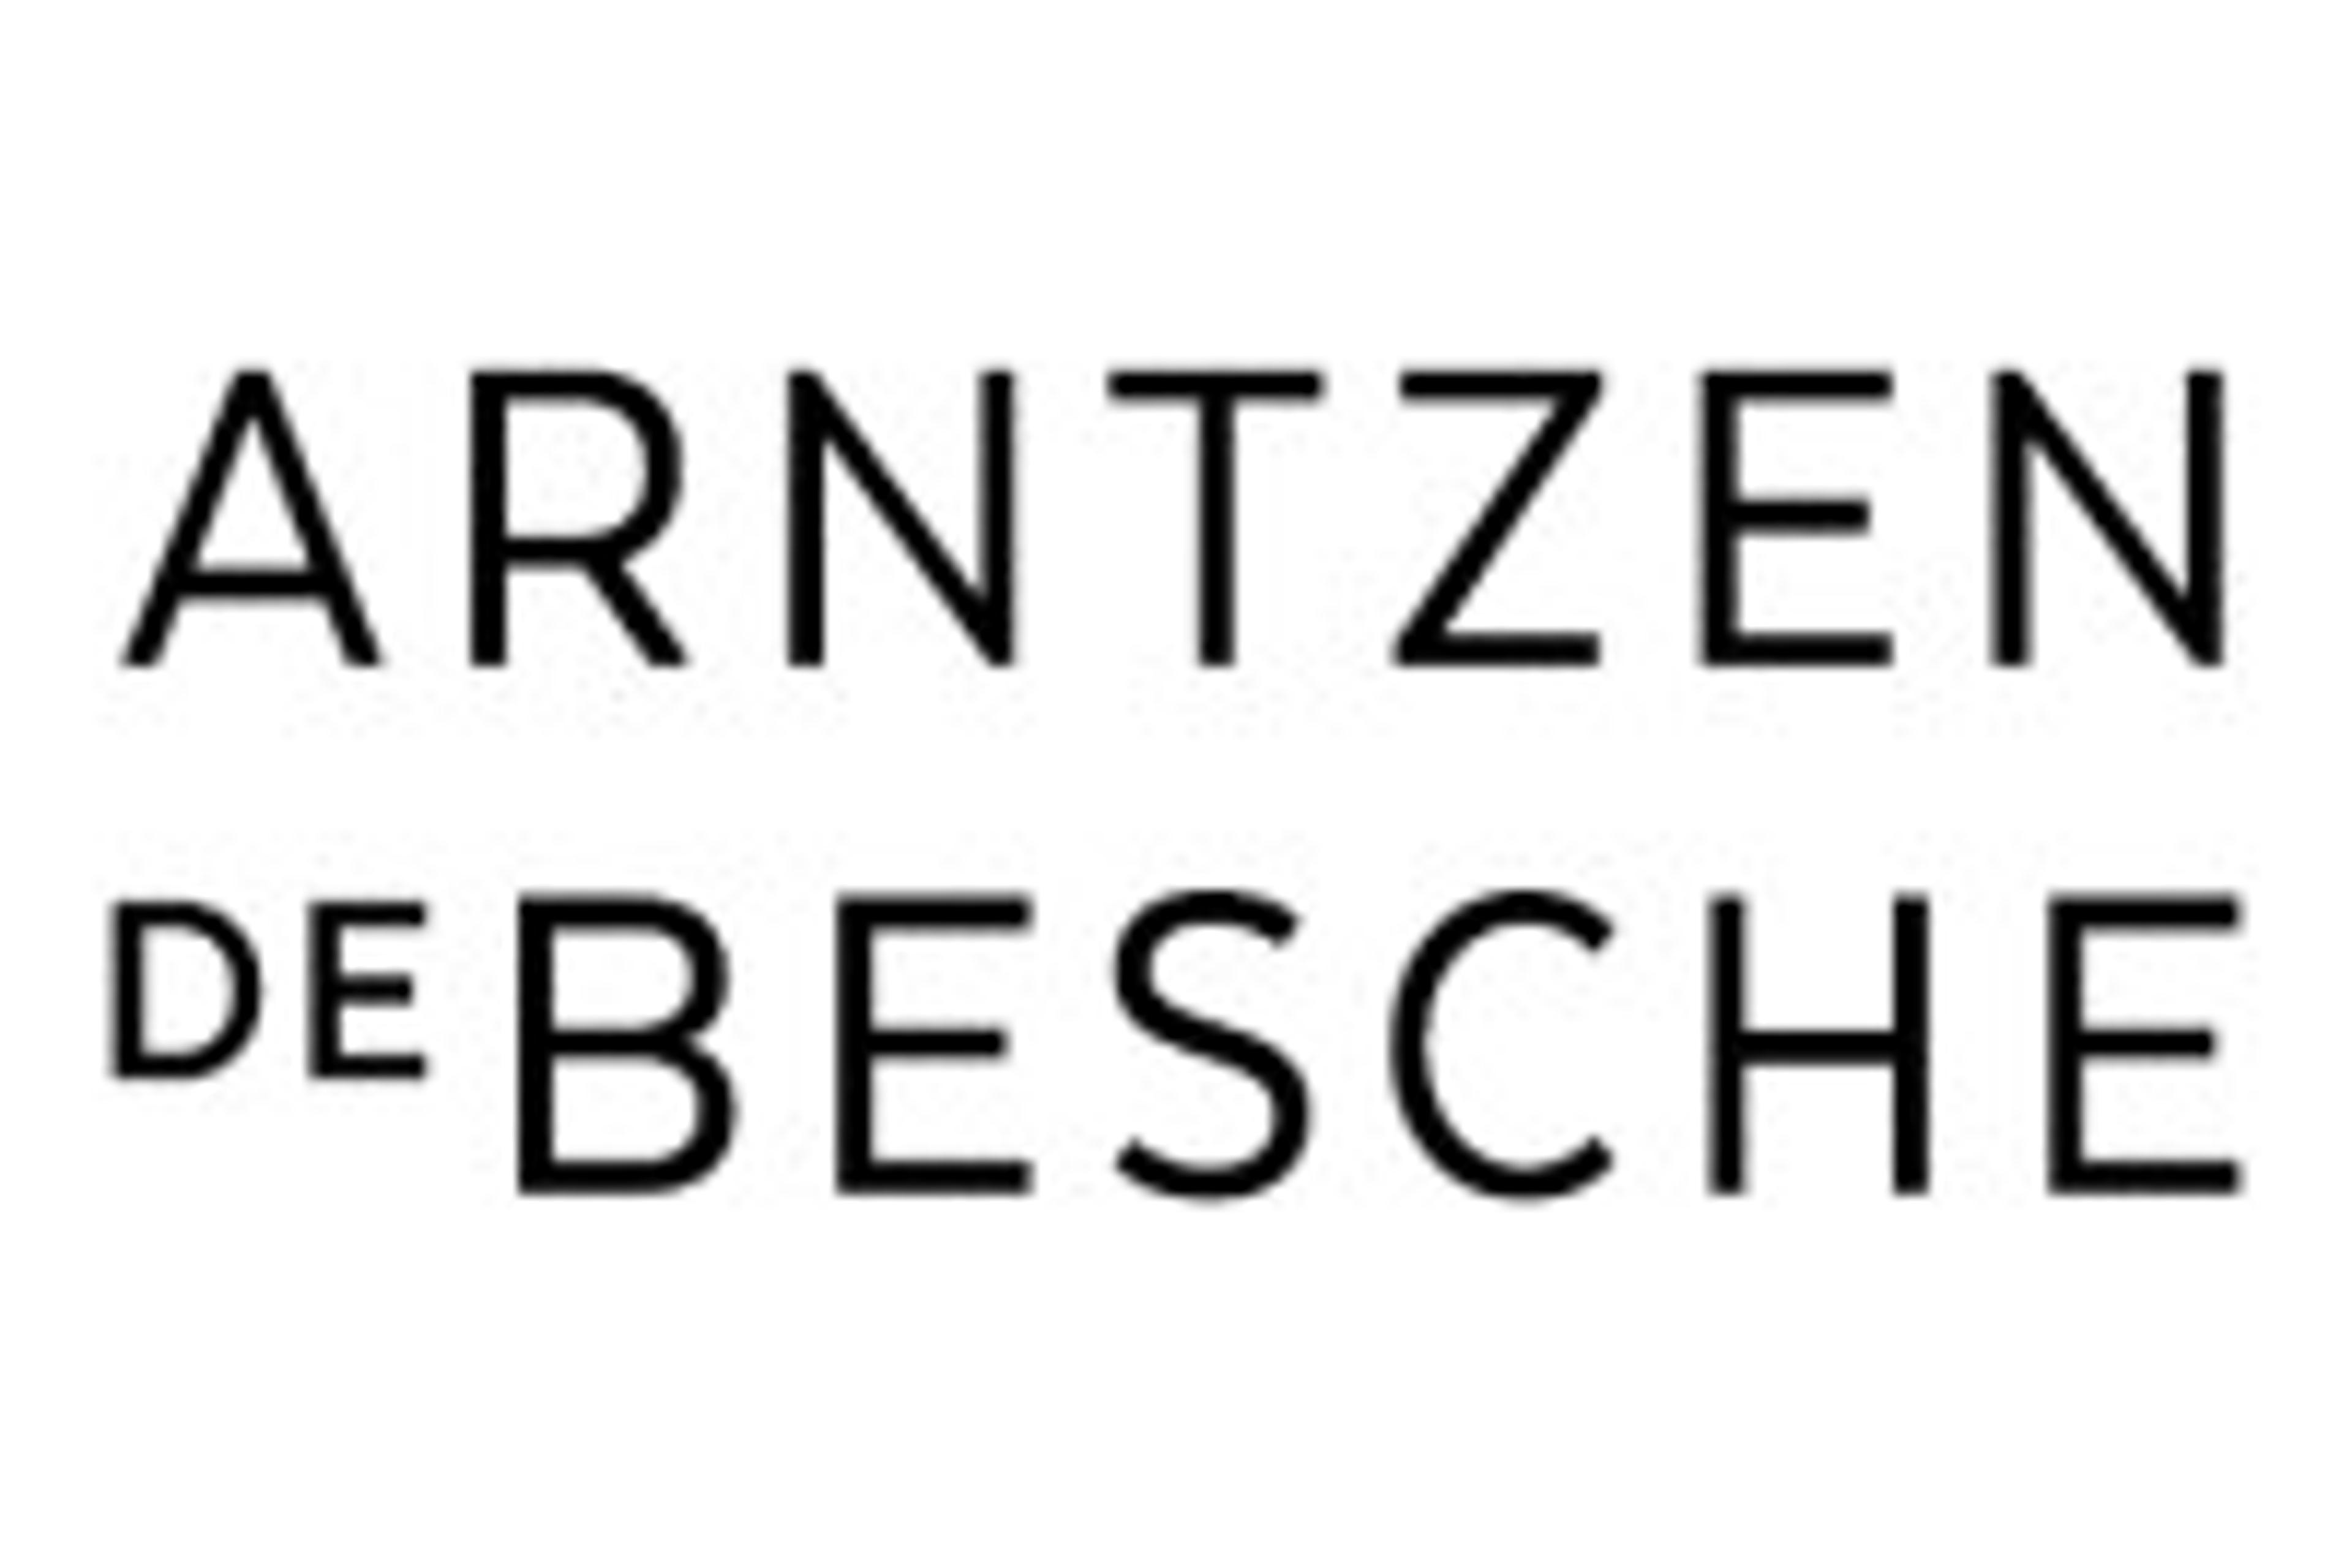 Arntzen de Besche logo